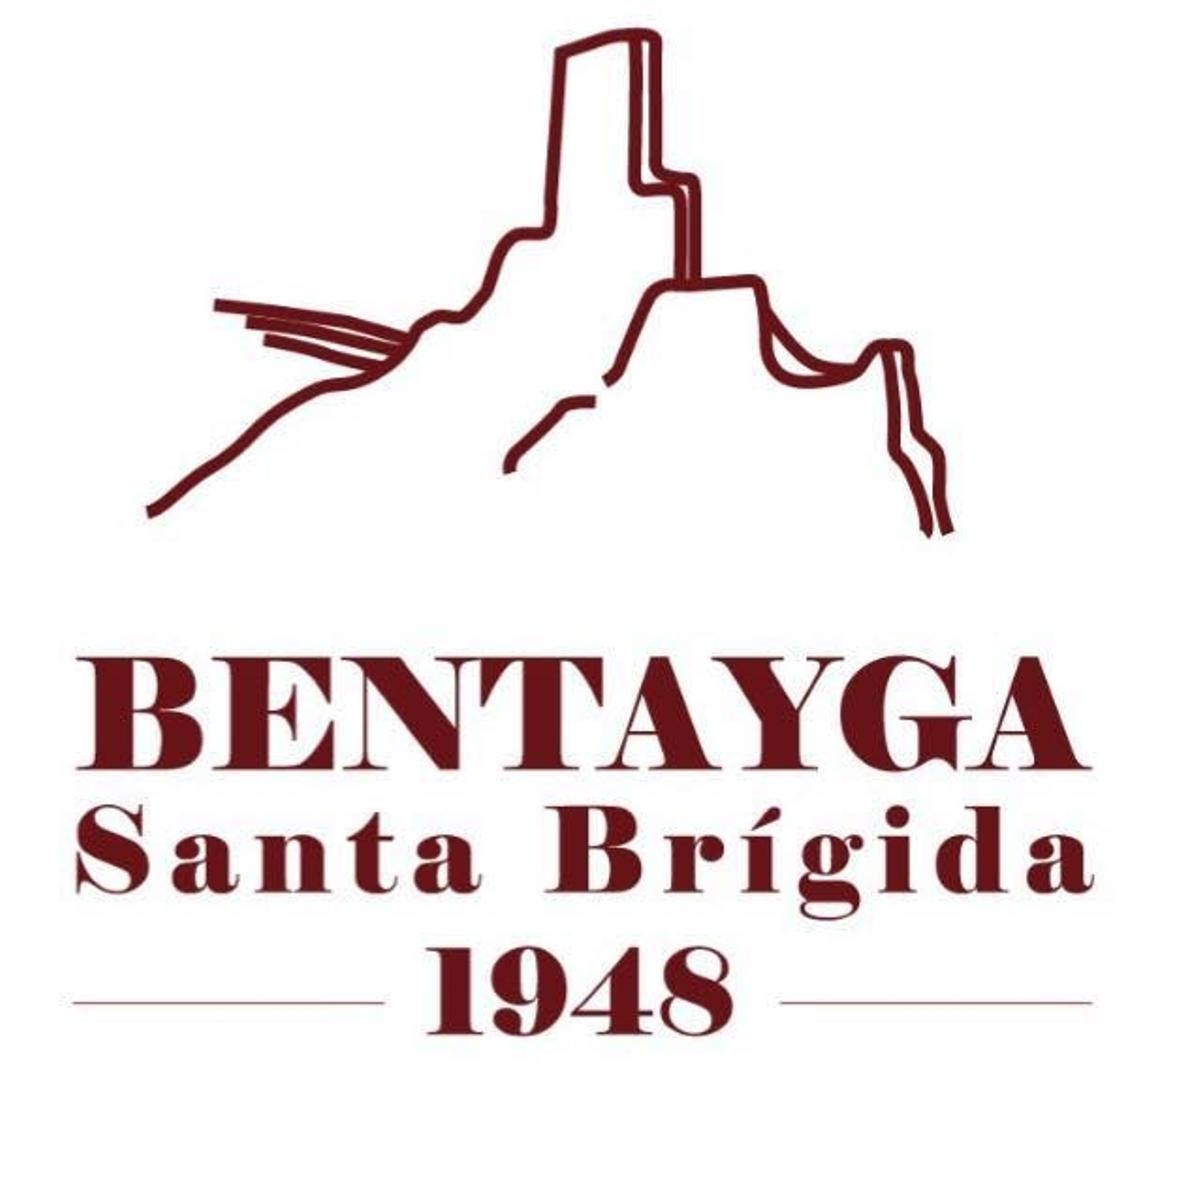 Bentayga, desde 1948.